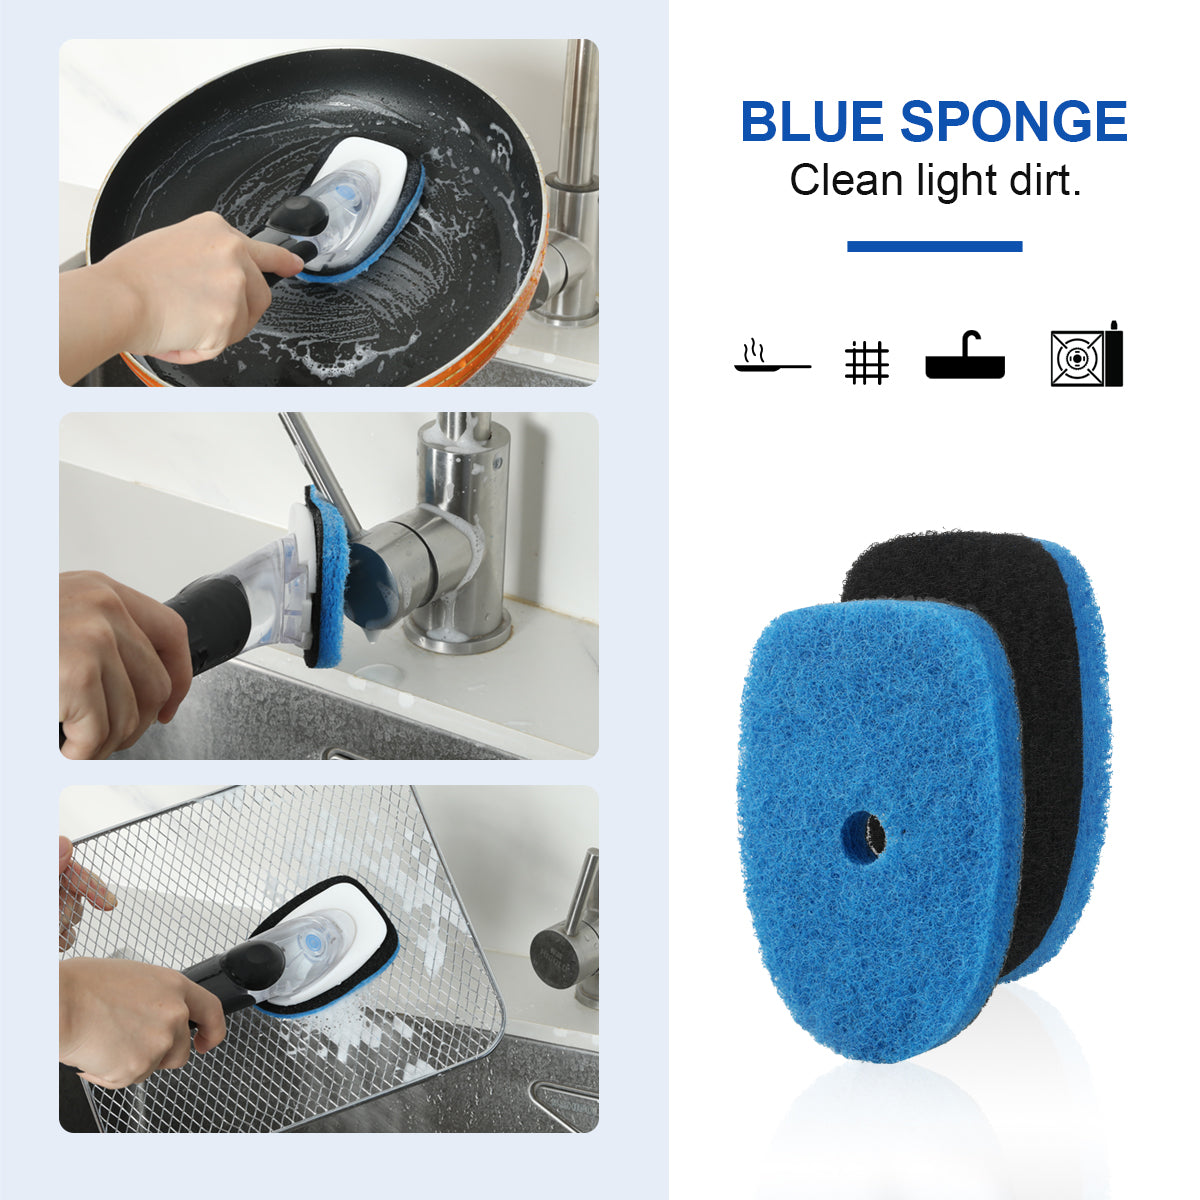 OXO Good Grips Soap Dispensing Dish Sponge Refills 2 Pack